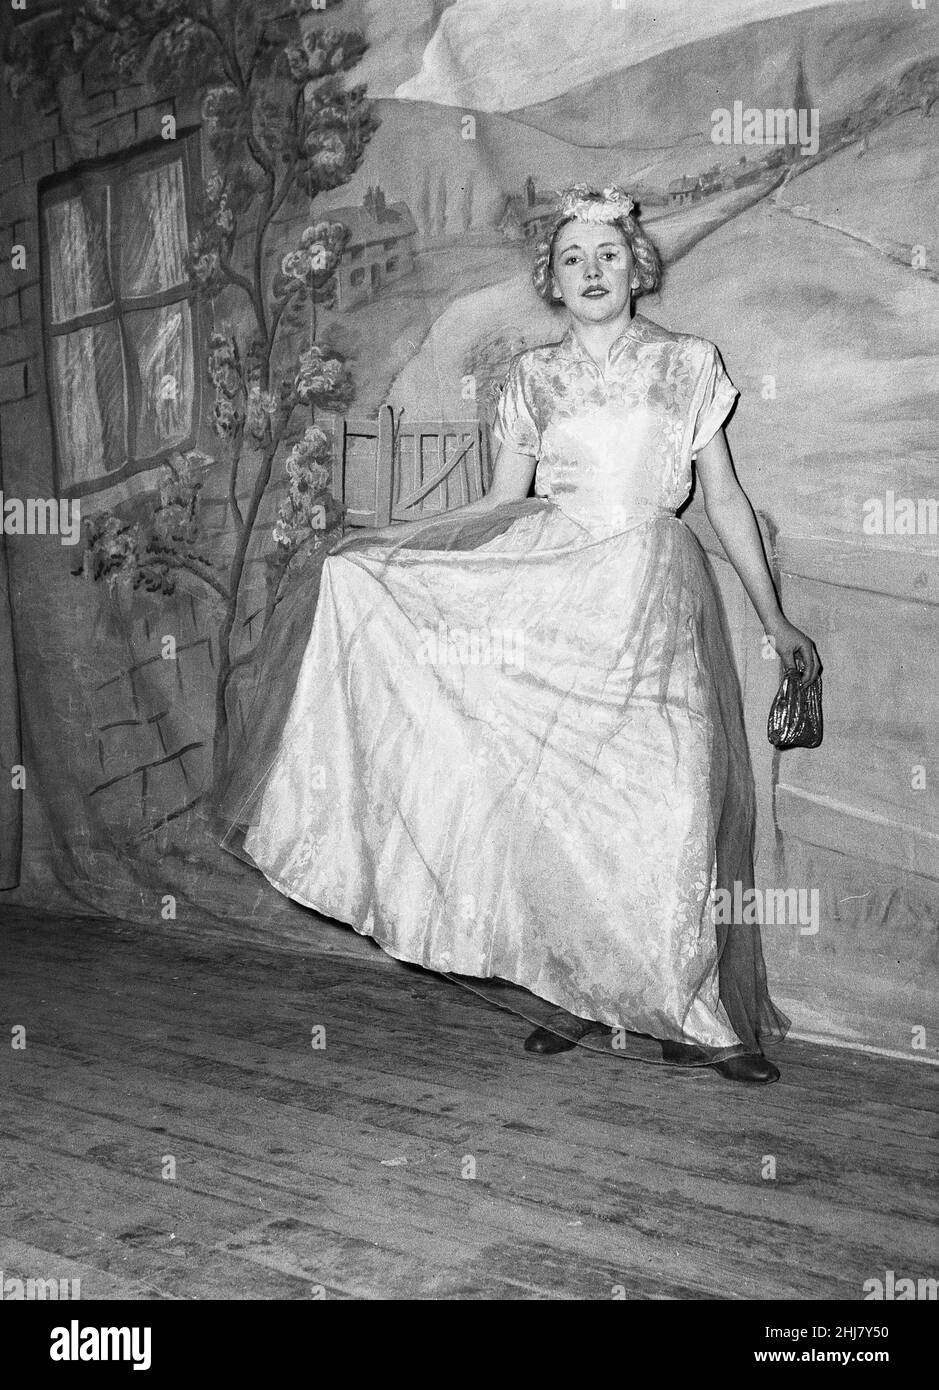 1956, historisch, Jack and the Beanstalk, Teenager-Mädchen auf der Bühne in ihrem Kostüm in einer Amateur-Theaterproduktion von Jack and the Beanstalk, einer berühmten alten englischen Volksgeschichte oder Fabel, England, Großbritannien. England, Großbritannien. Stockfoto